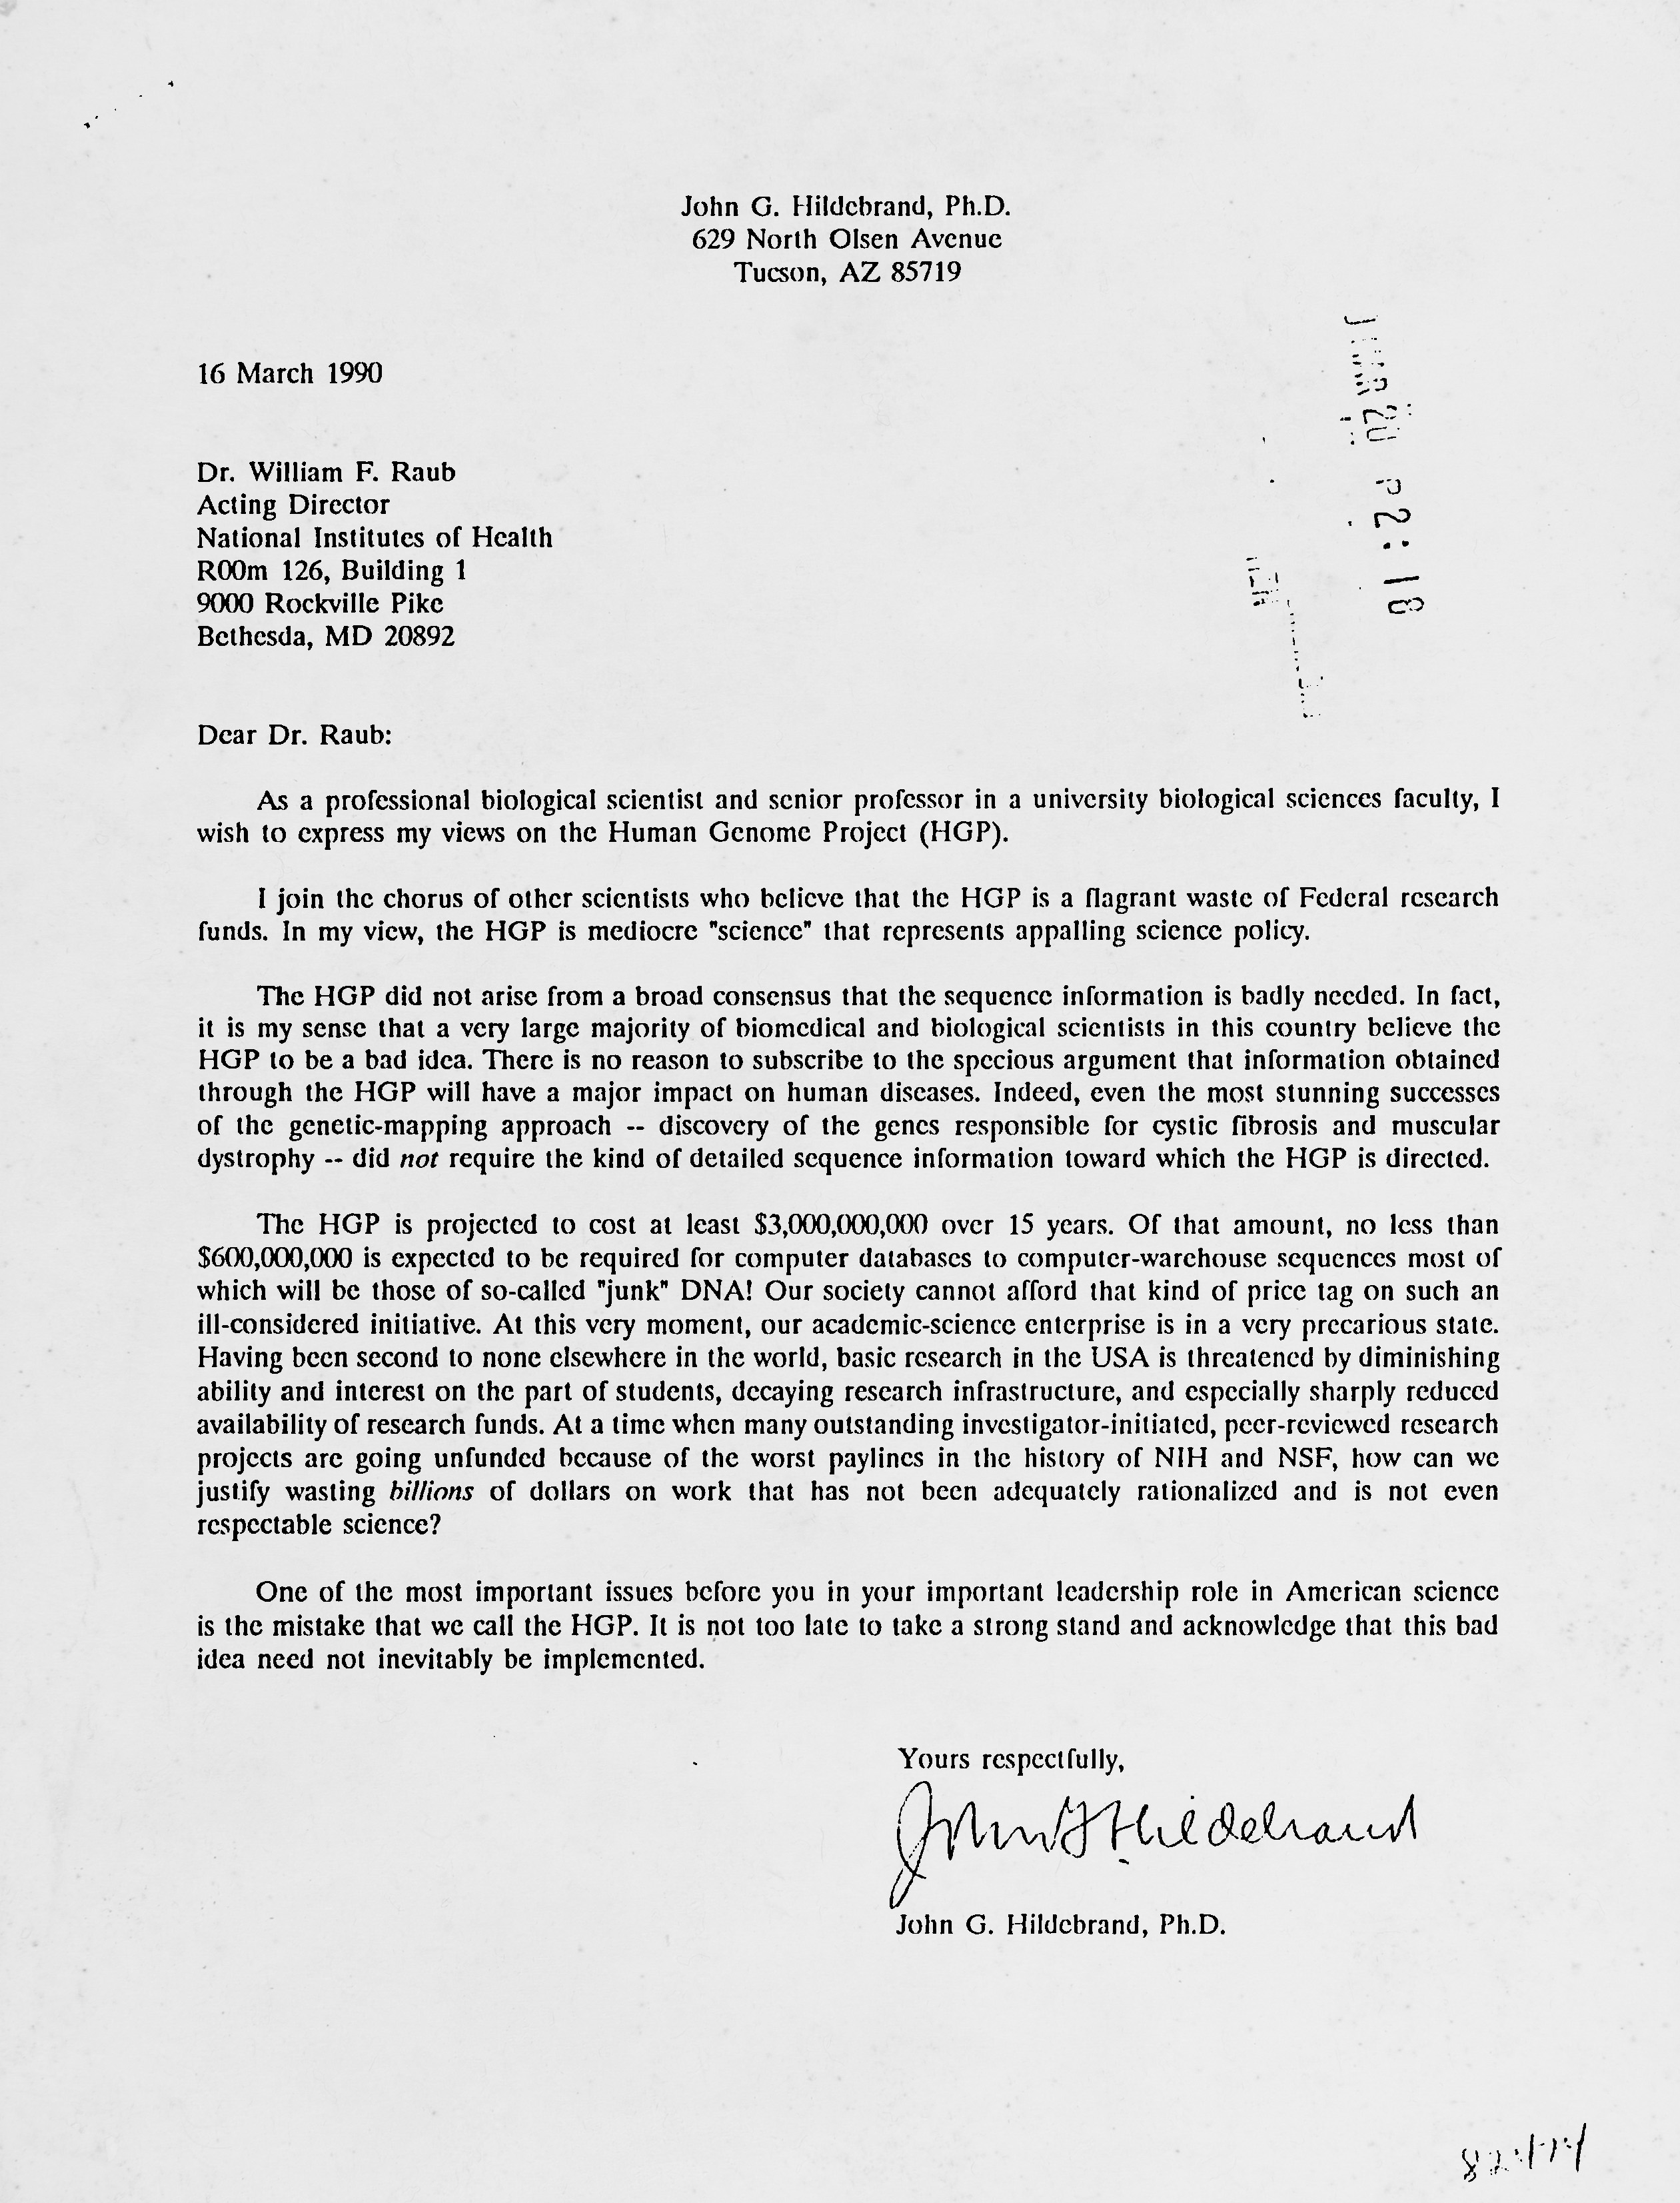 Anti-HGP Letter from John Hildebrand